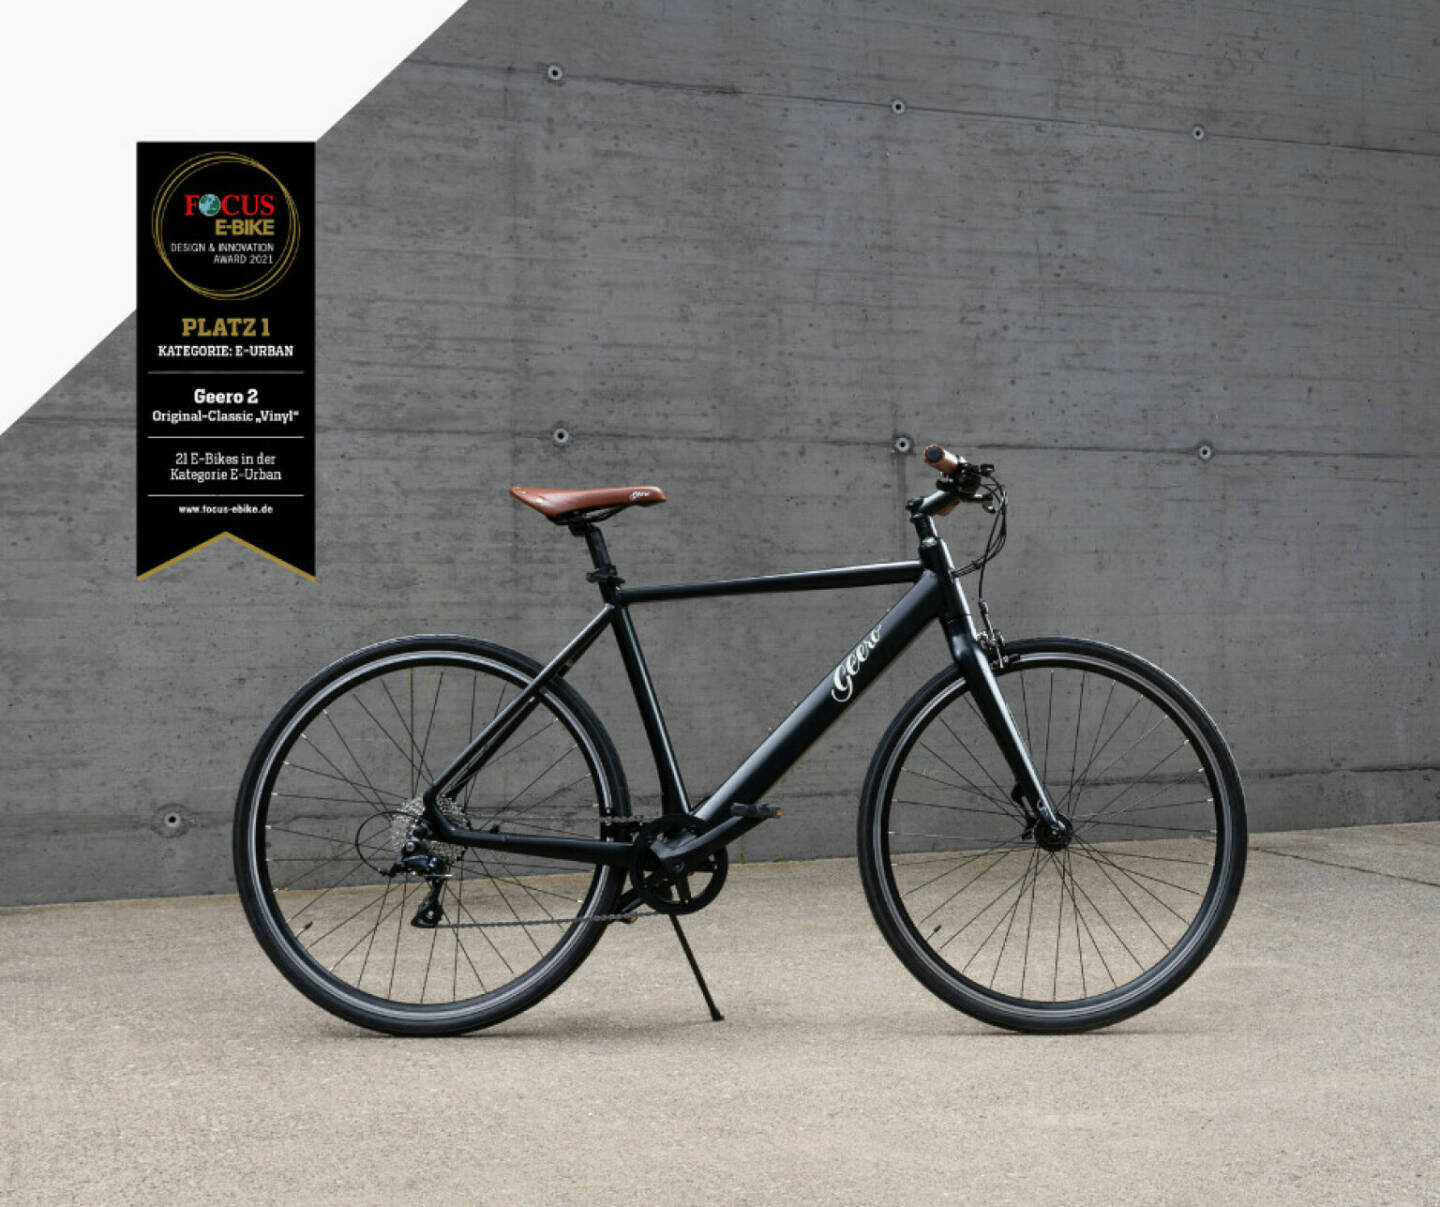 Das Geero 2 Original-Classic Vinyl ist der Sieger beim Focus E-Bike Design Award 2021 in der Kategorie E-Urban und belegte in der Gesamtwertung den 2. Platz. Credit: niceshops